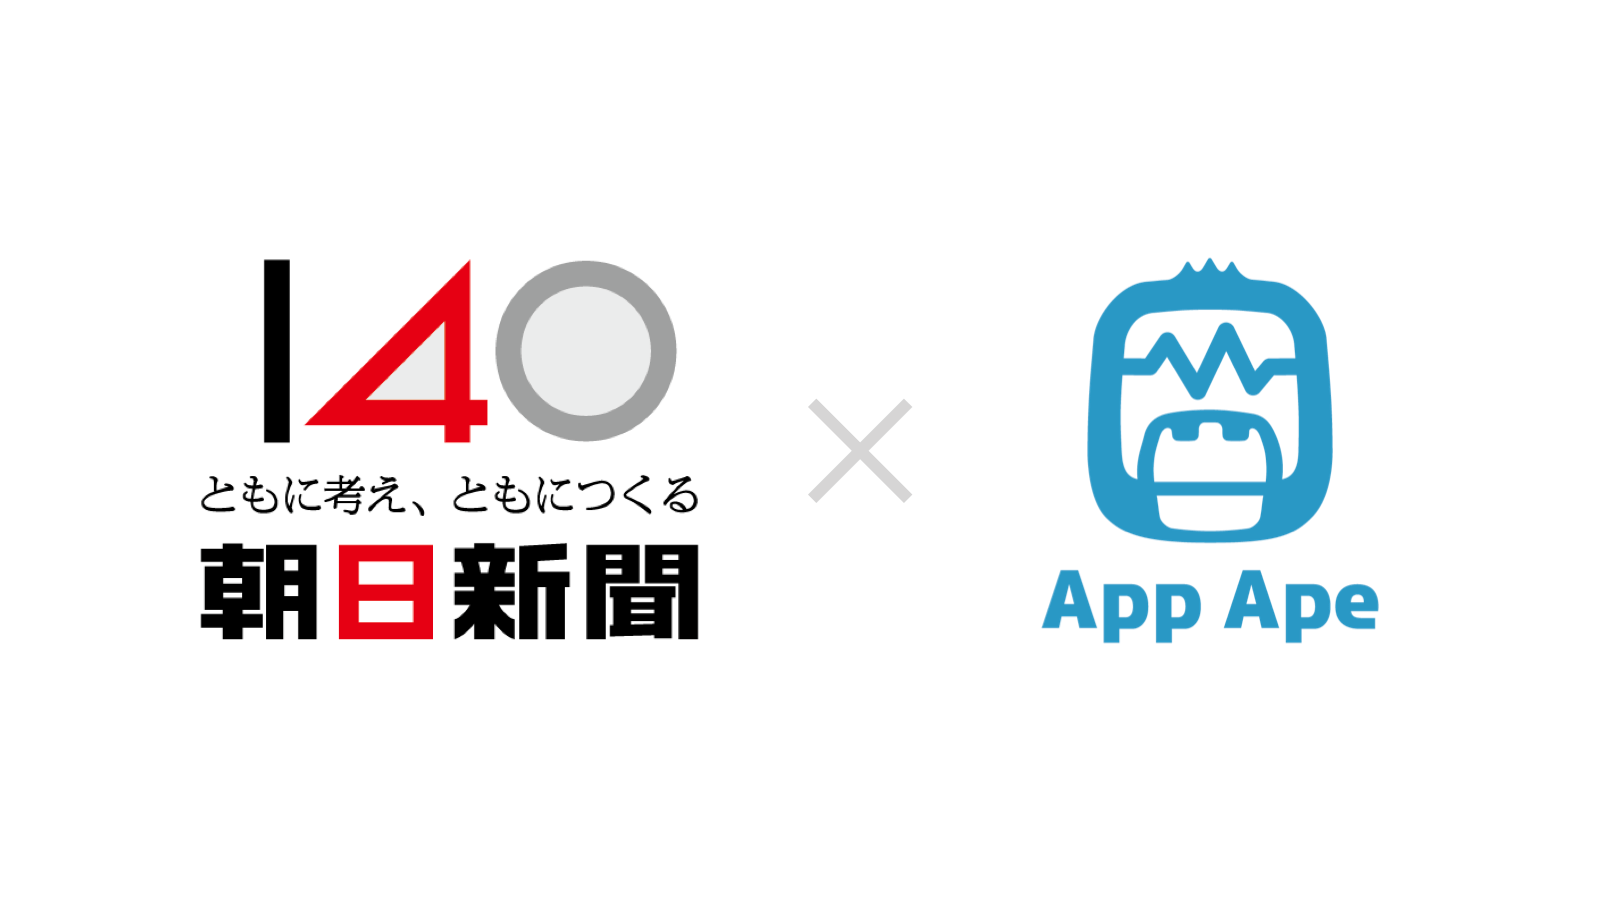 朝日新聞社、アプリ分析プラットフォーム「App Ape」導入